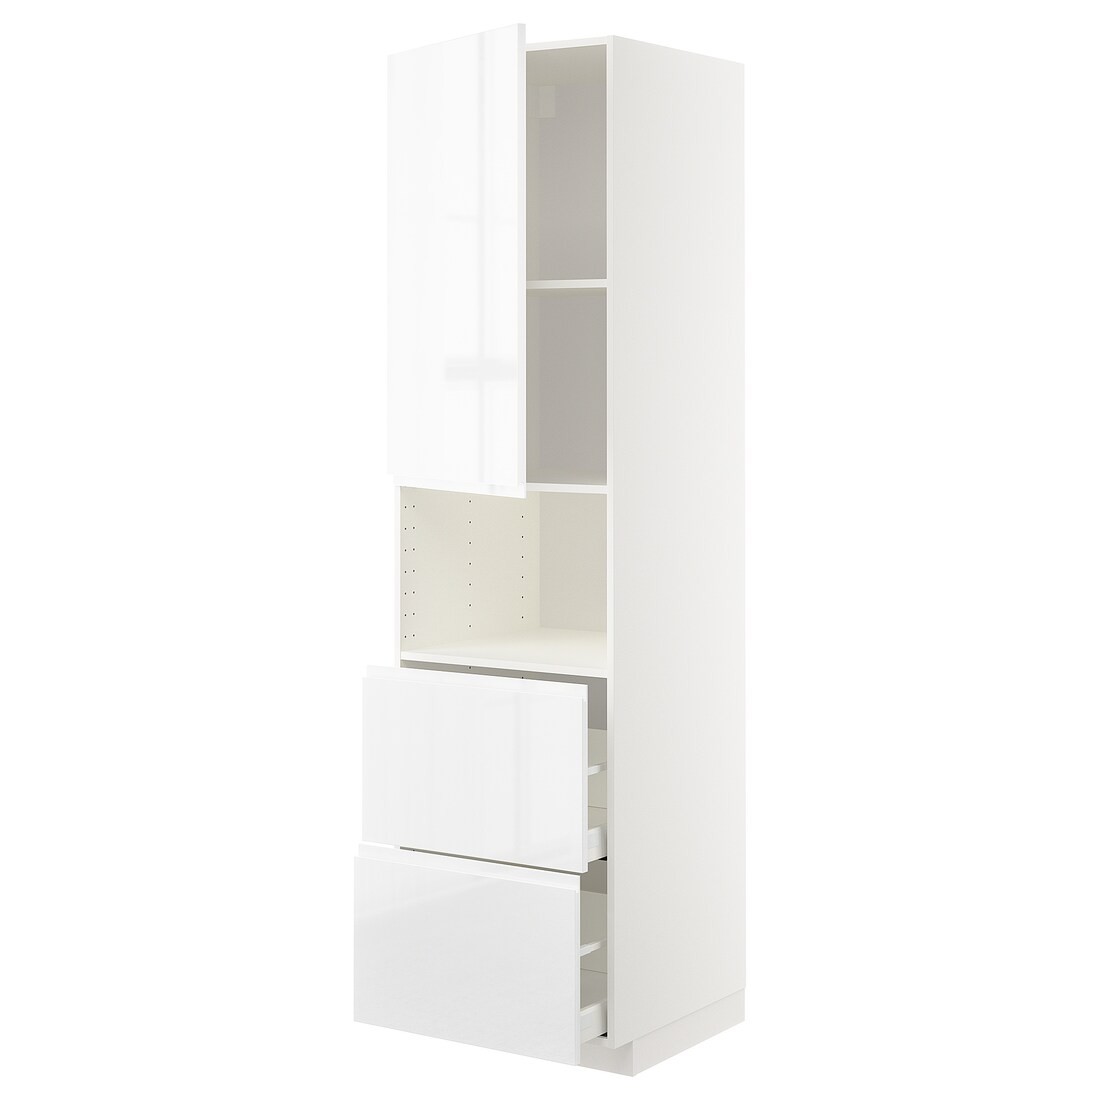 METOD МЕТОД / MAXIMERA МАКСИМЕРА Высокий шкаф для микроволновки с дверями / 2 ящика, белый / Voxtorp глянцевый / белый, 60x60x220 см